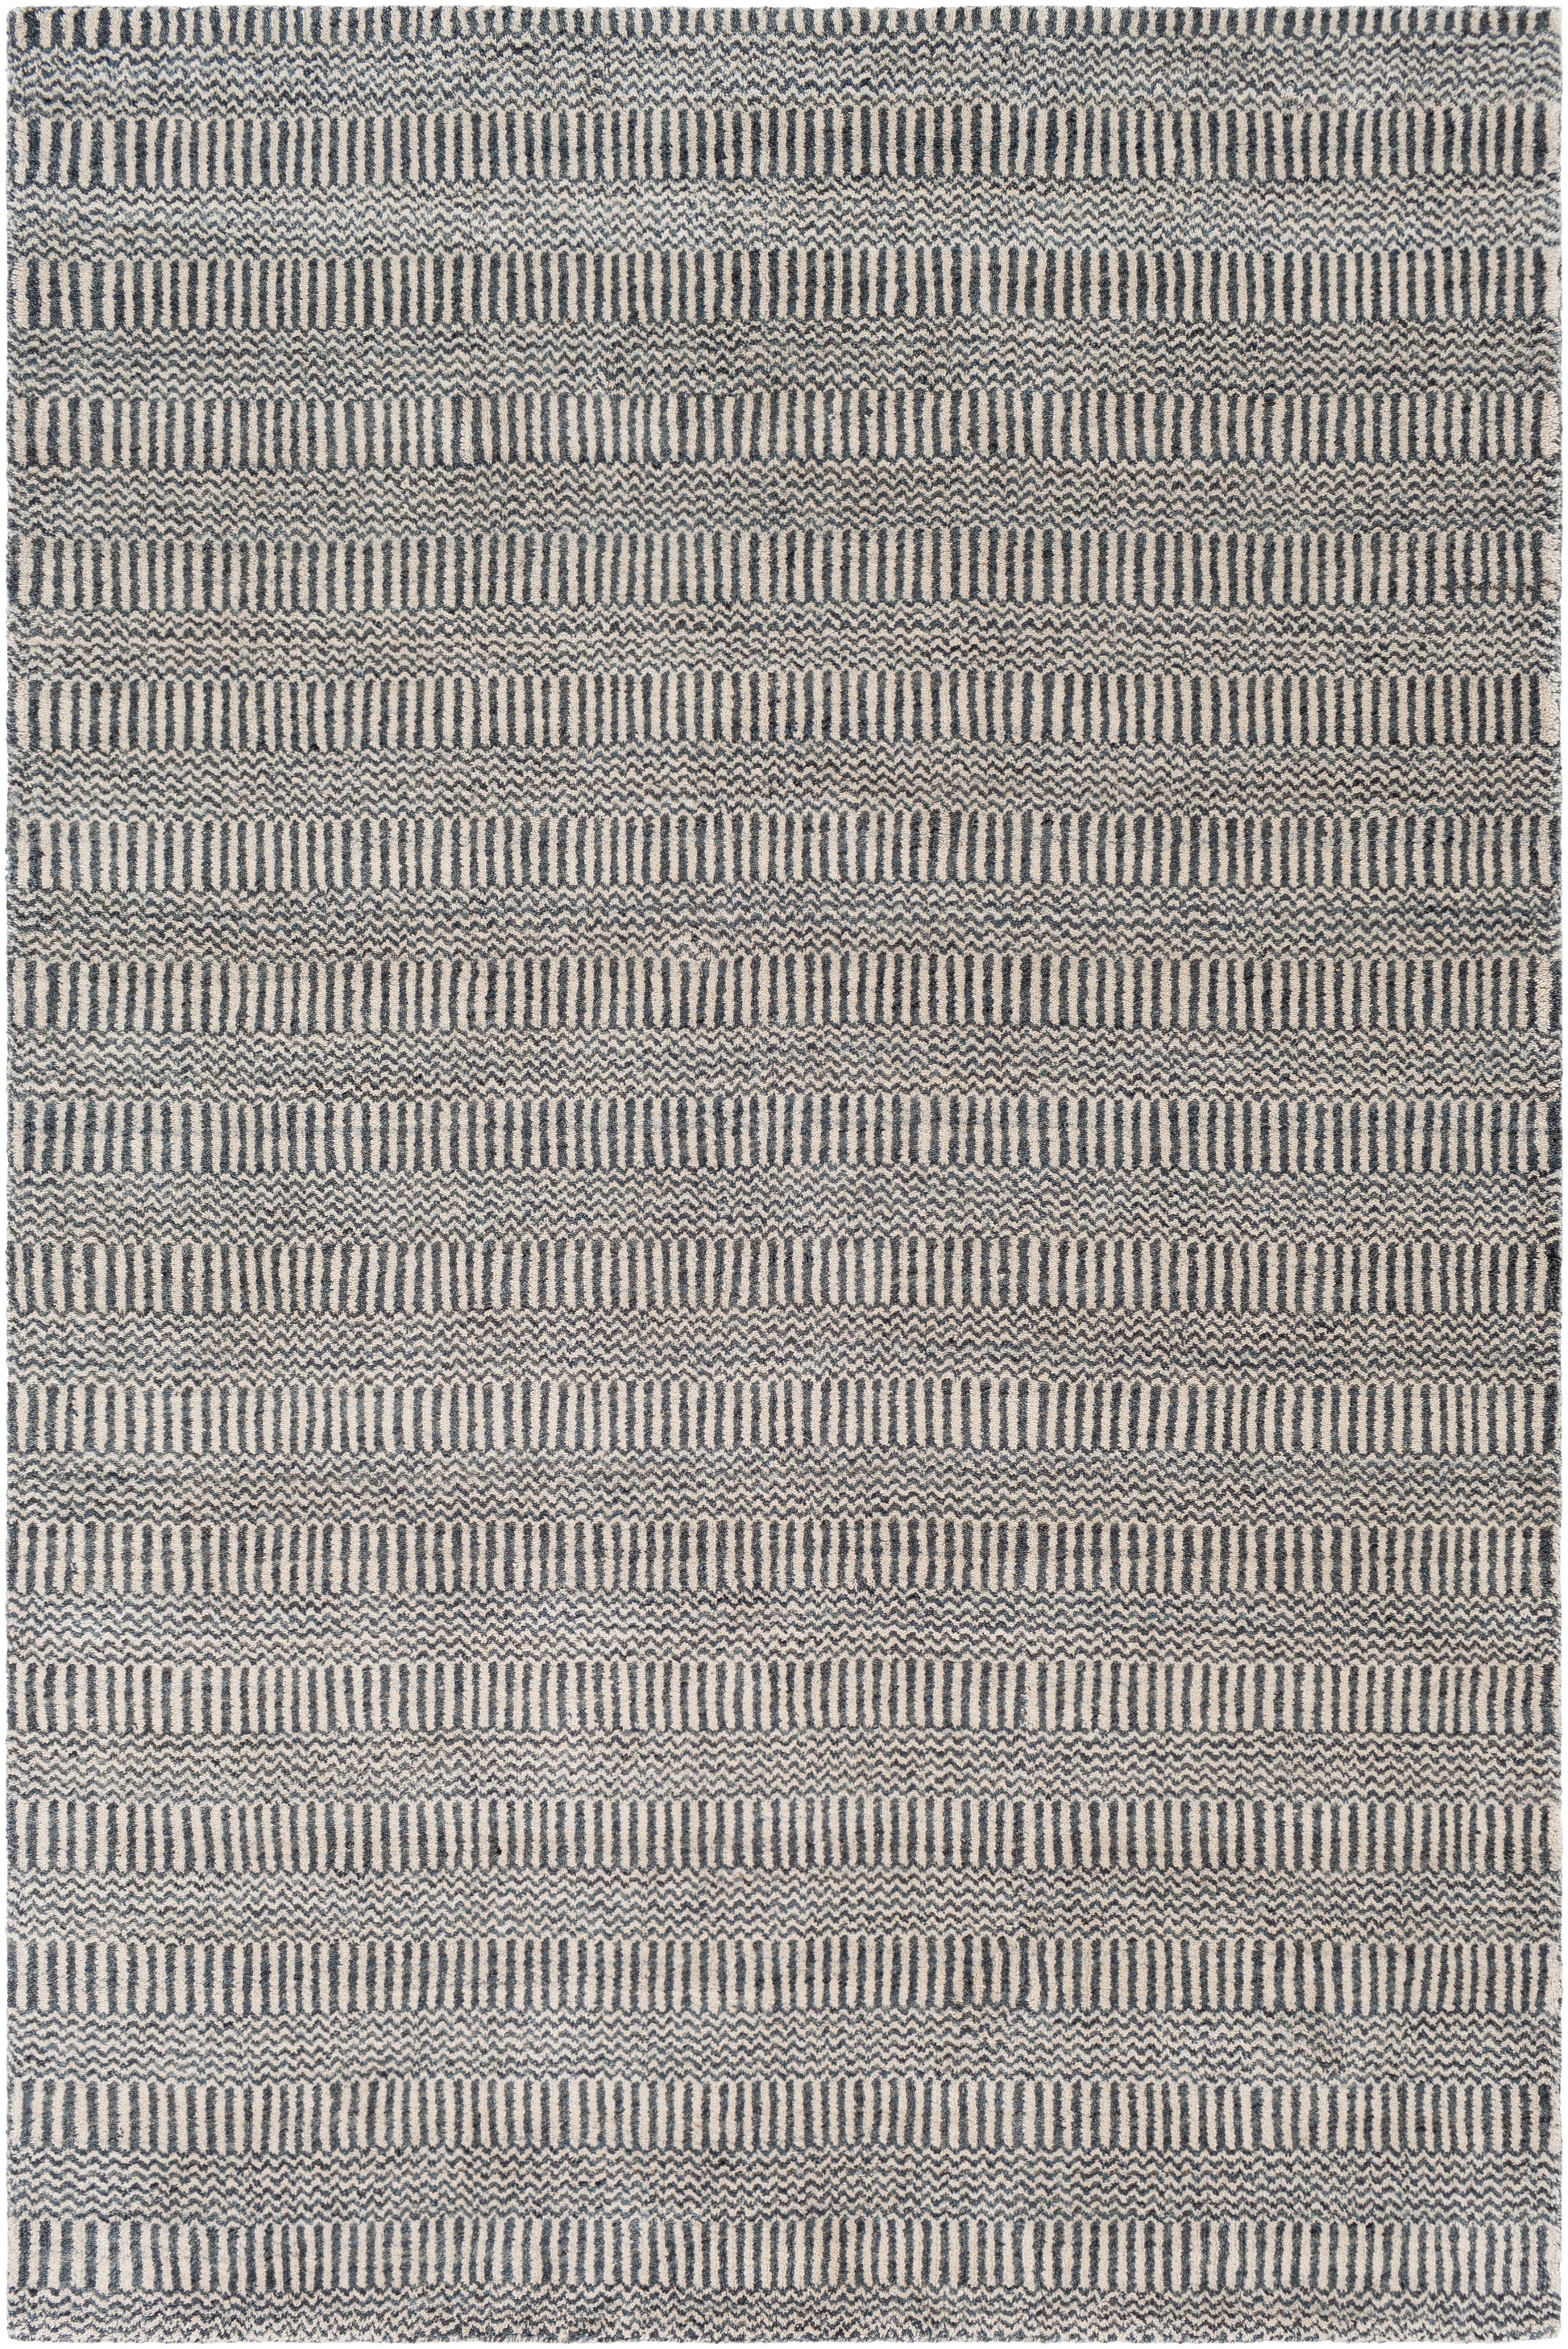 Teton 22155 Hand Loomed Wool Indoor Area Rug by Surya Rugs | Area Rug